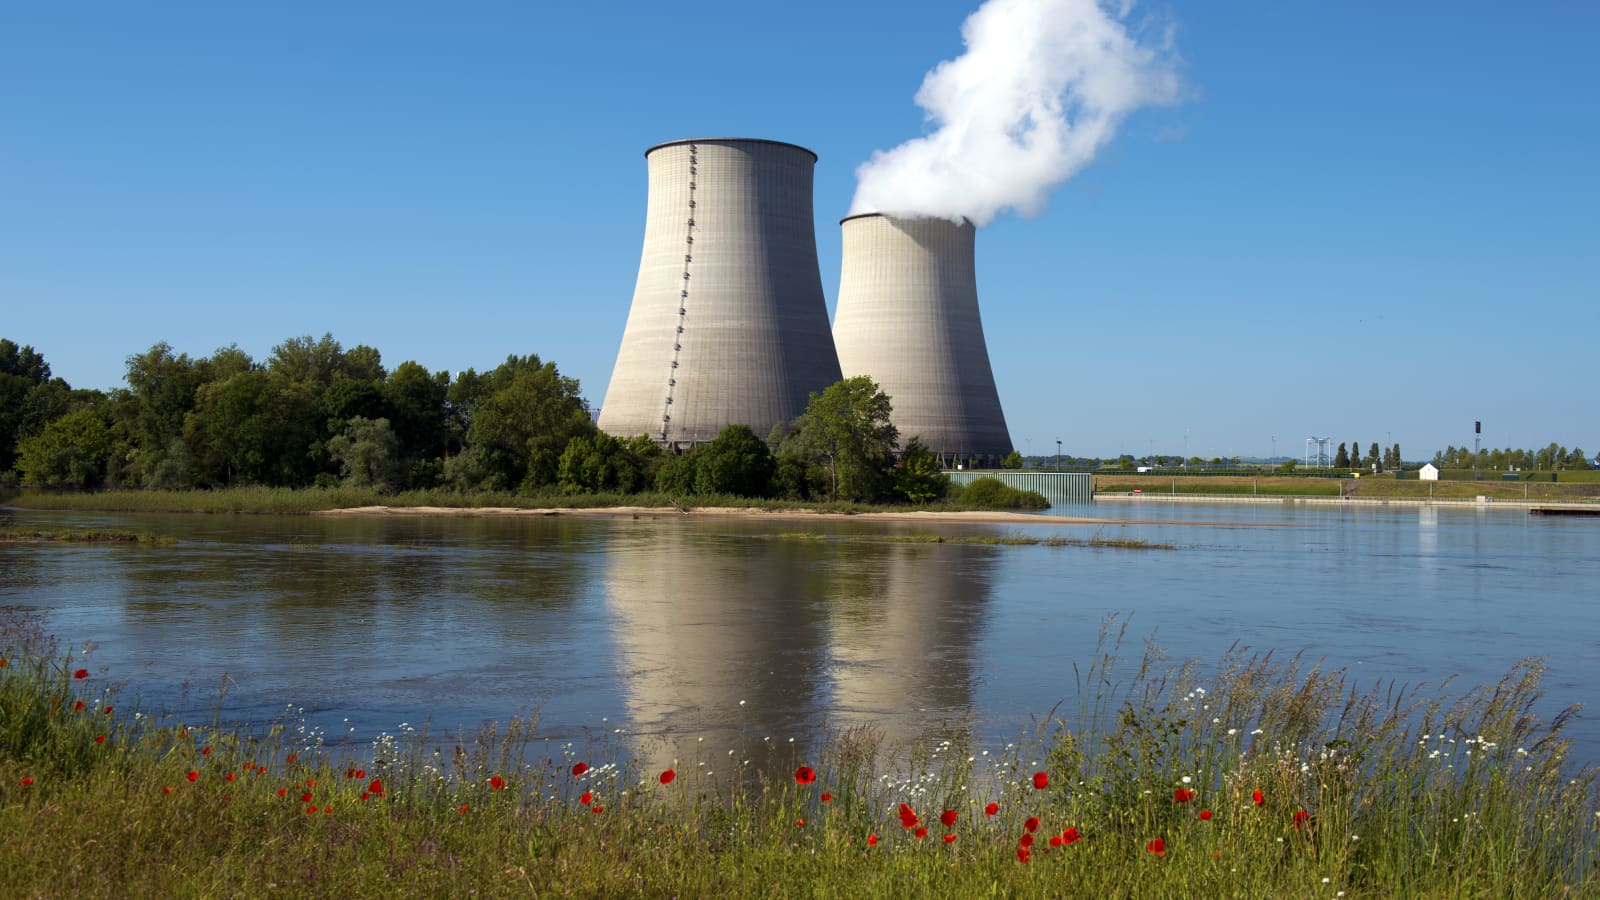 الطاقة النووية في فرنسا